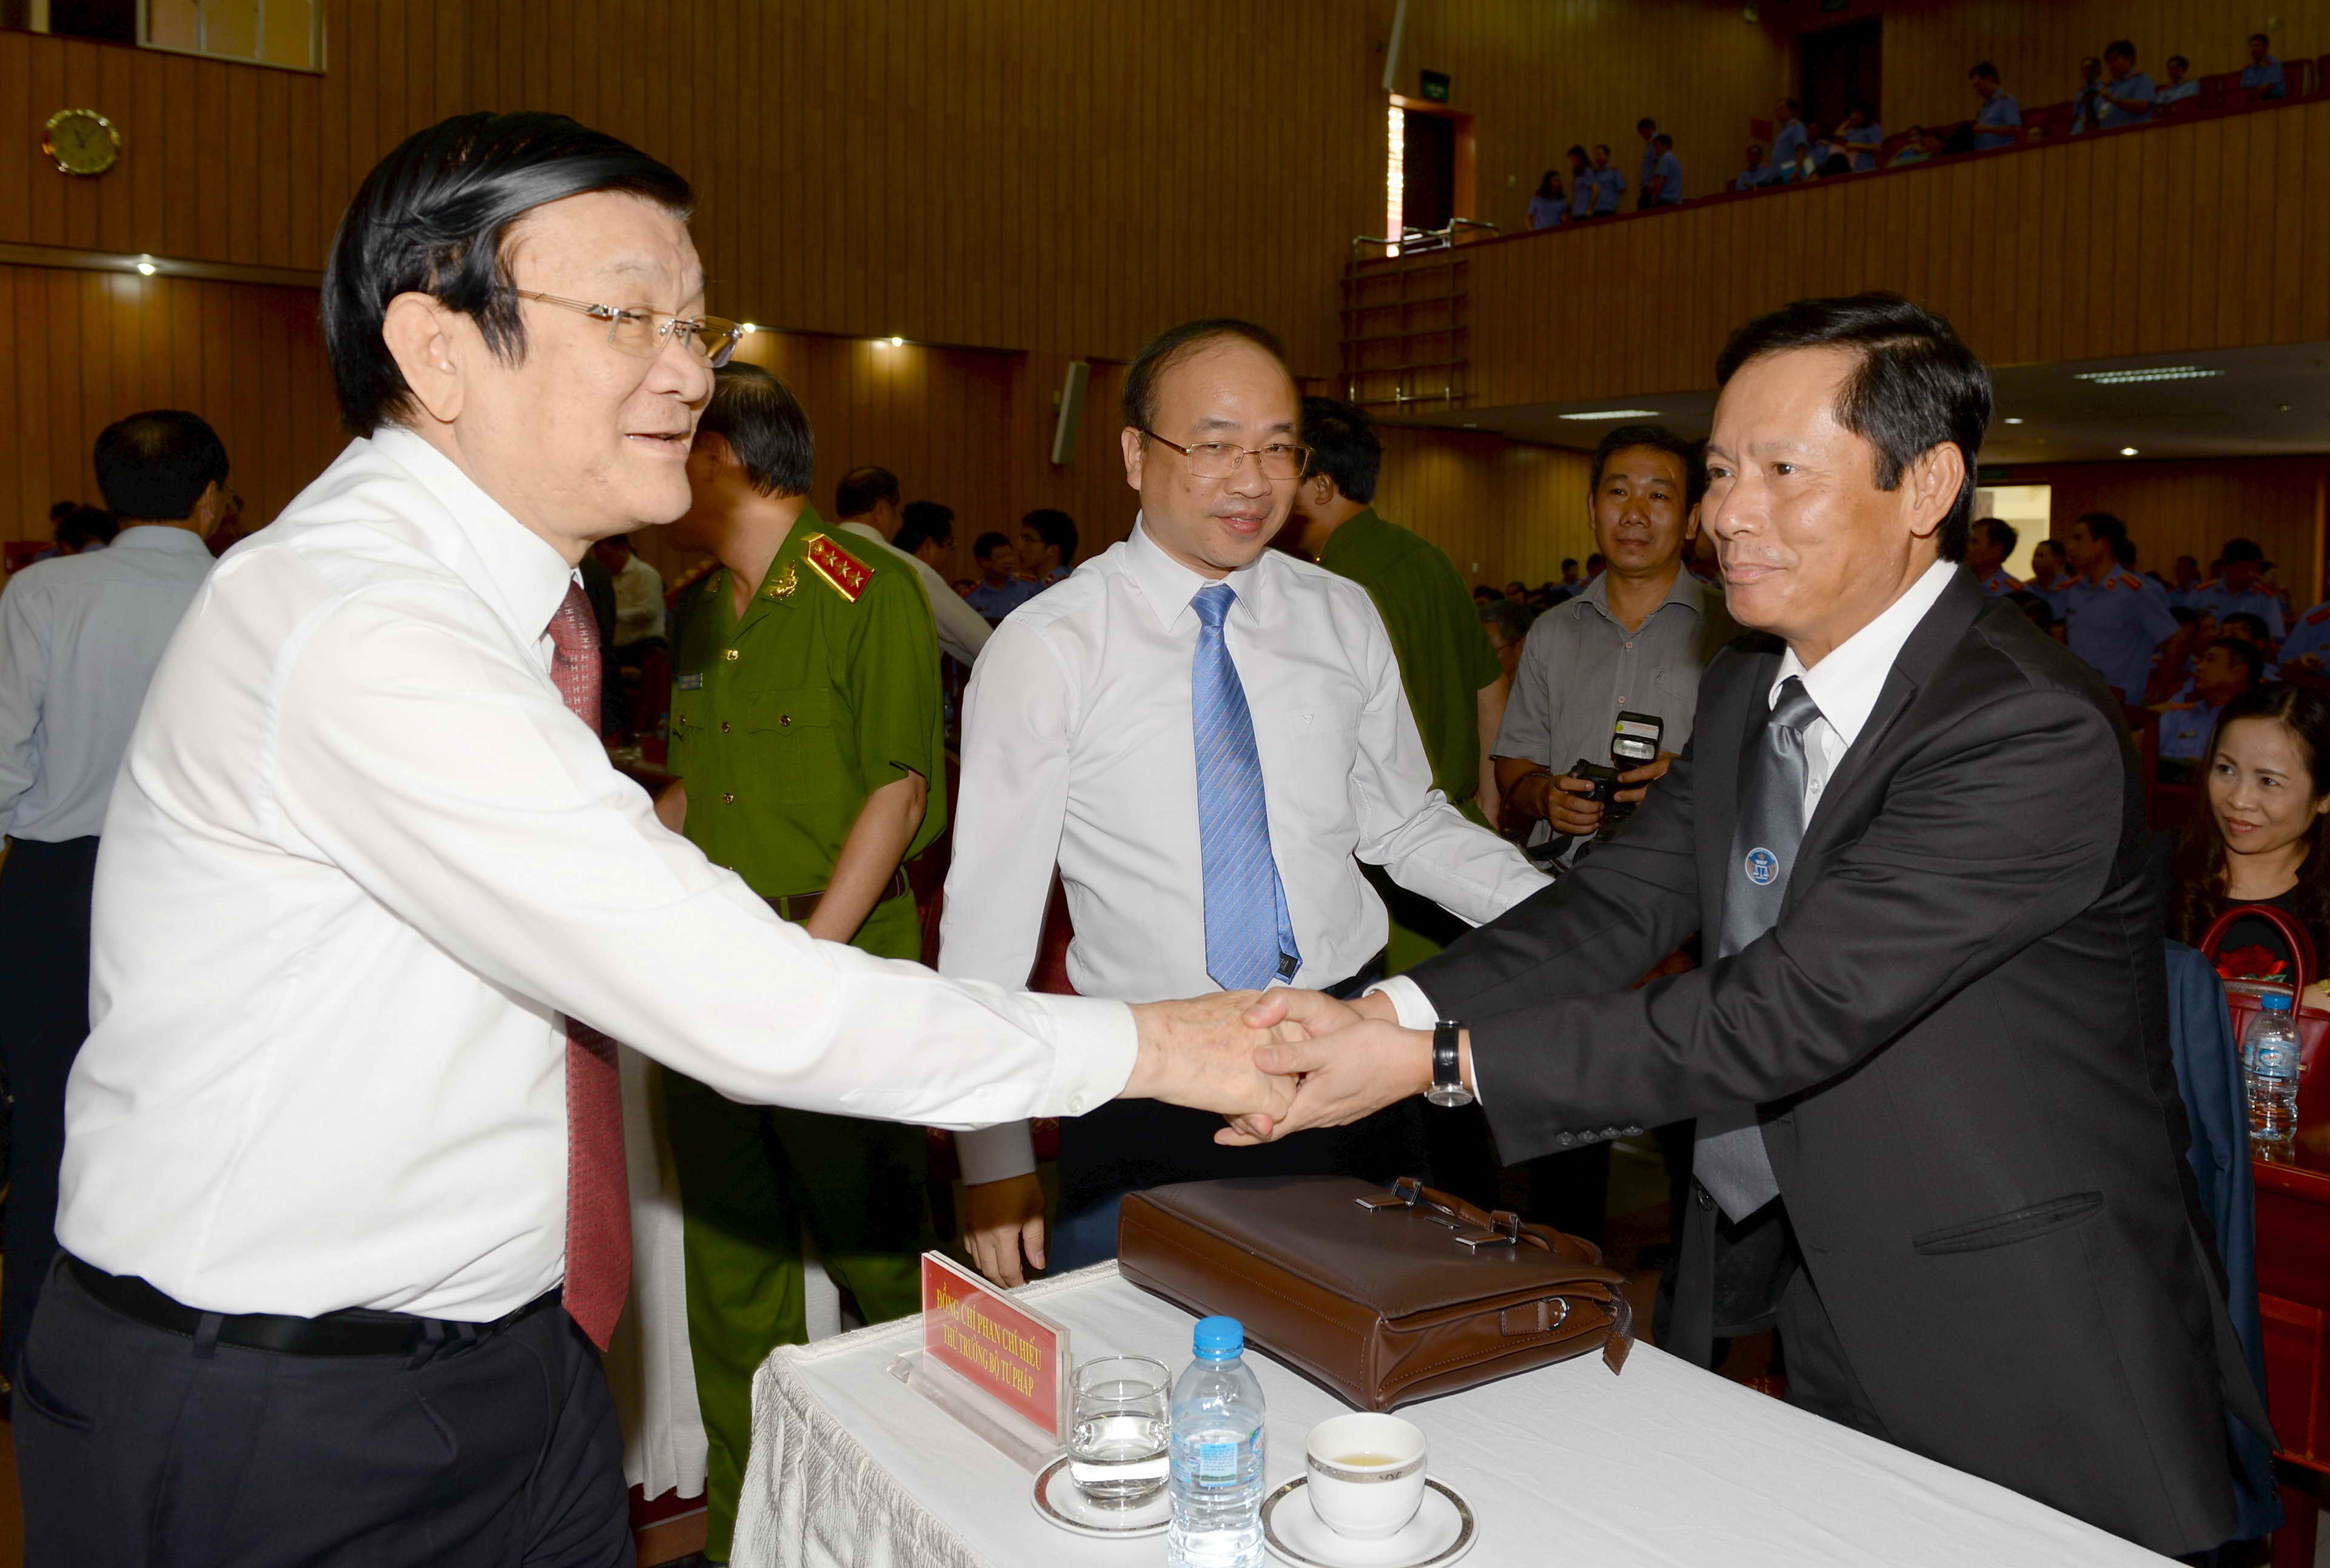 Chủ tịch nước Trương Tấn Sang thăm hỏi đại biểu dự hội nghị - Ảnh: Diệp Đức Minh
